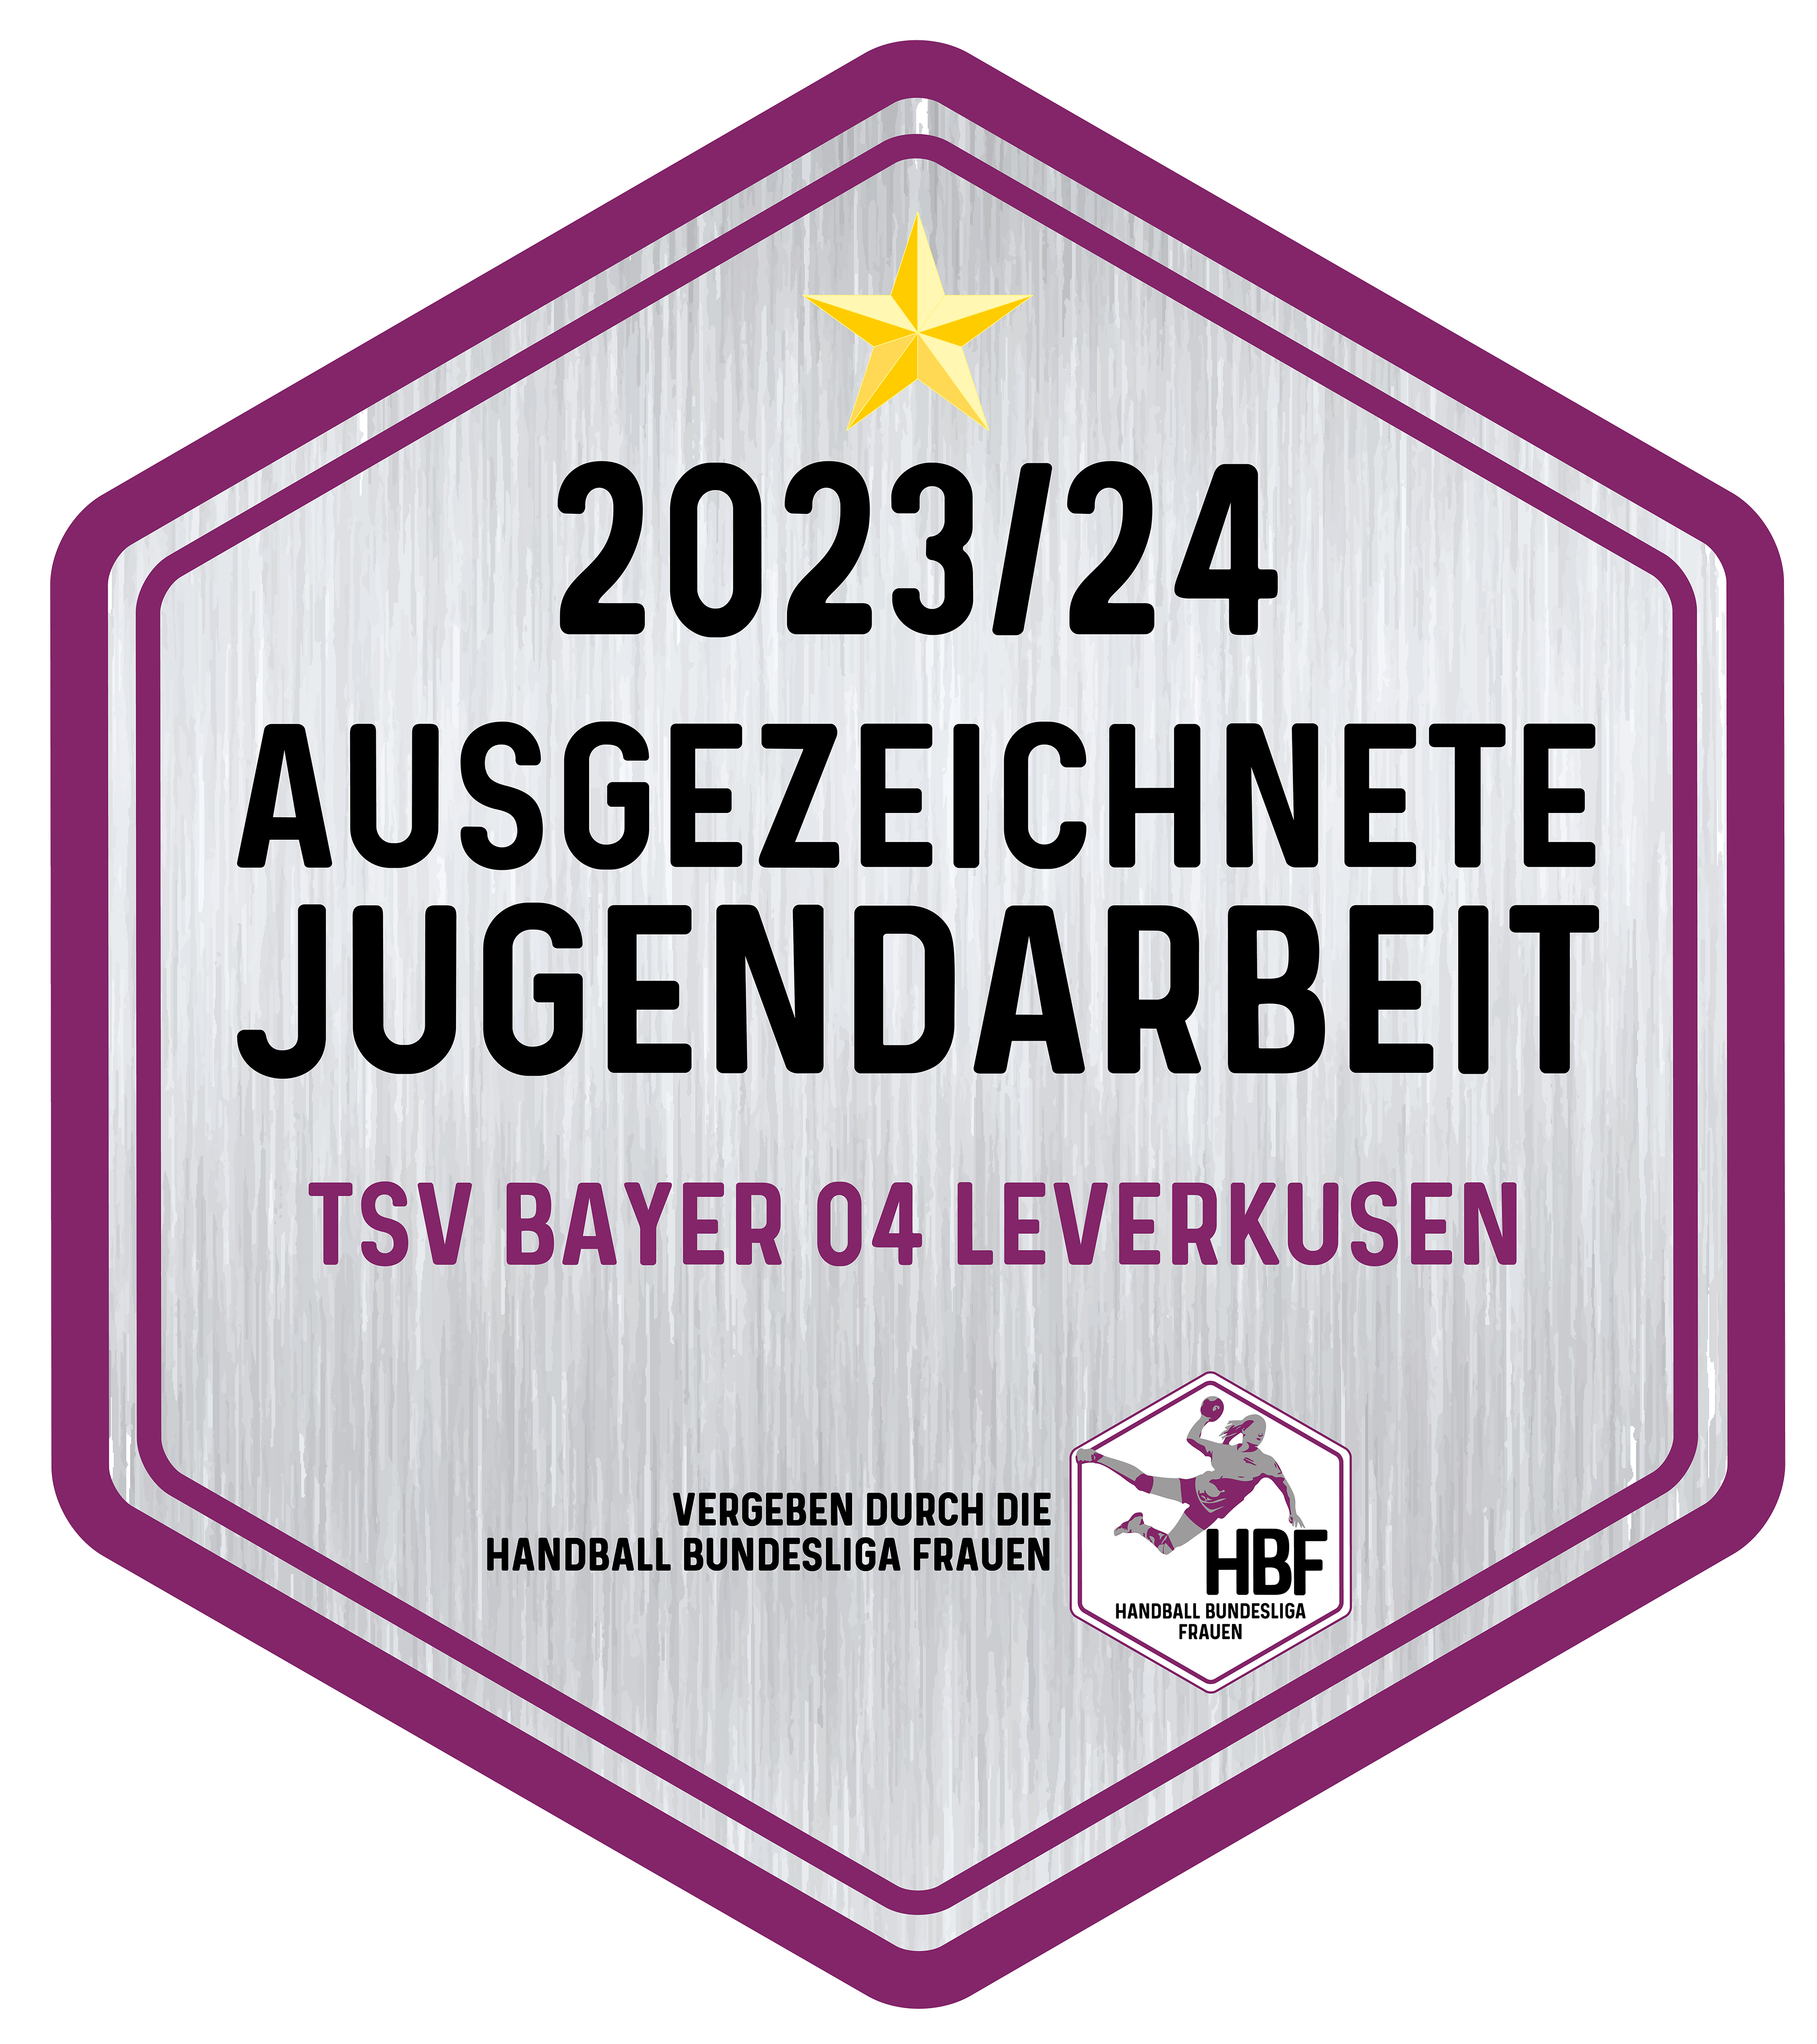 Ausgezeichnete Jugendarbeit 2020/2021: TSV Bayer Leverkusen